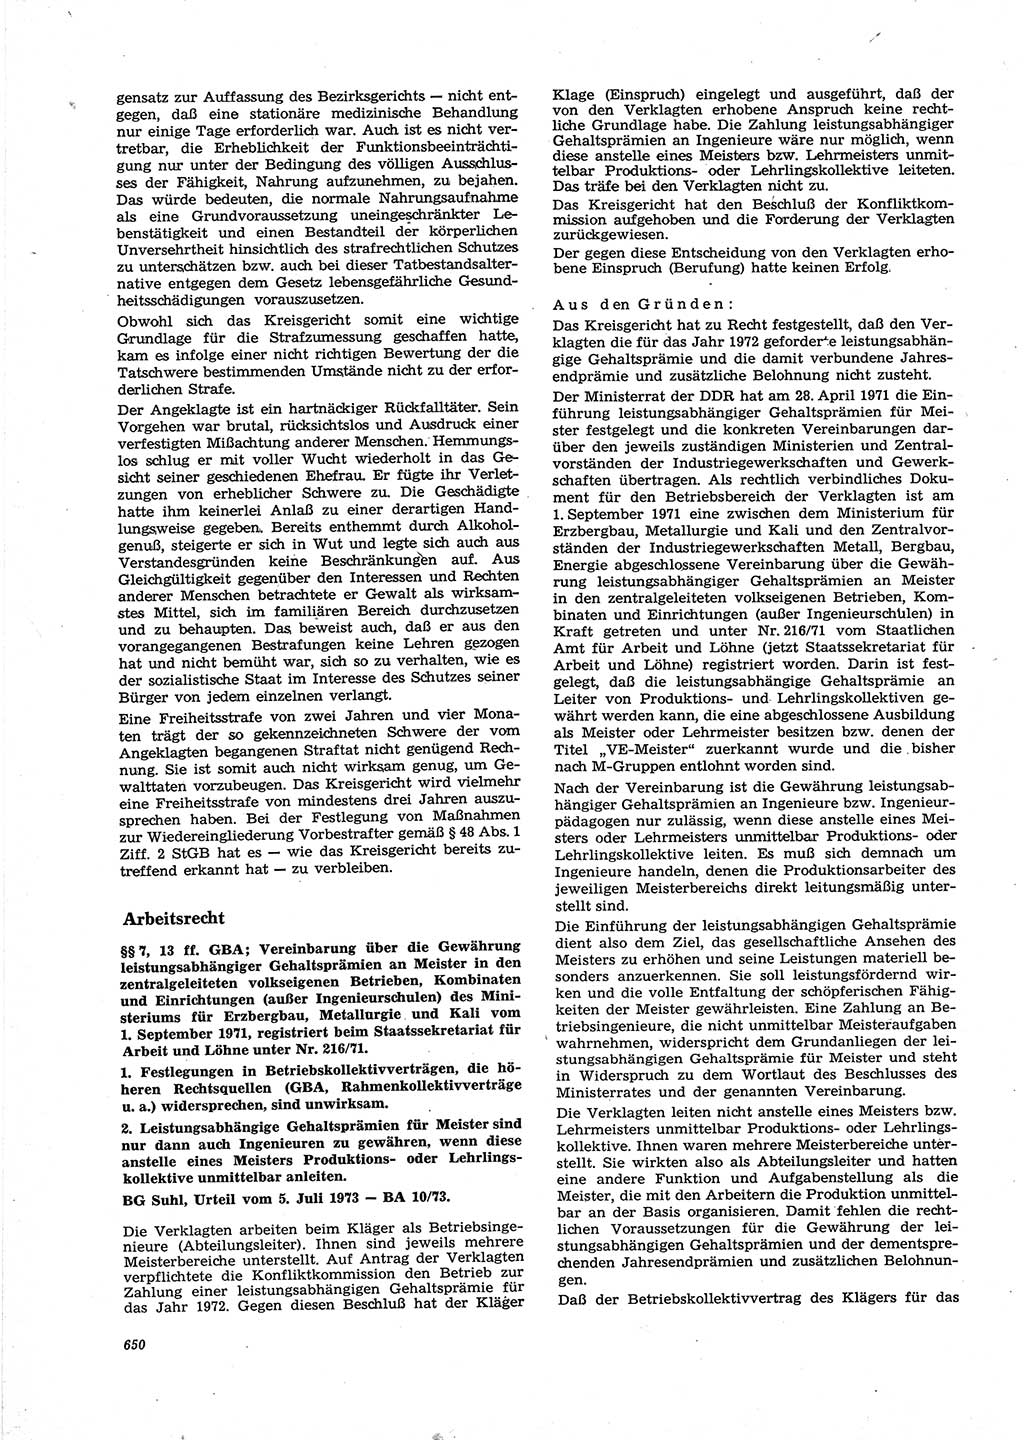 Neue Justiz (NJ), Zeitschrift für Recht und Rechtswissenschaft [Deutsche Demokratische Republik (DDR)], 27. Jahrgang 1973, Seite 650 (NJ DDR 1973, S. 650)